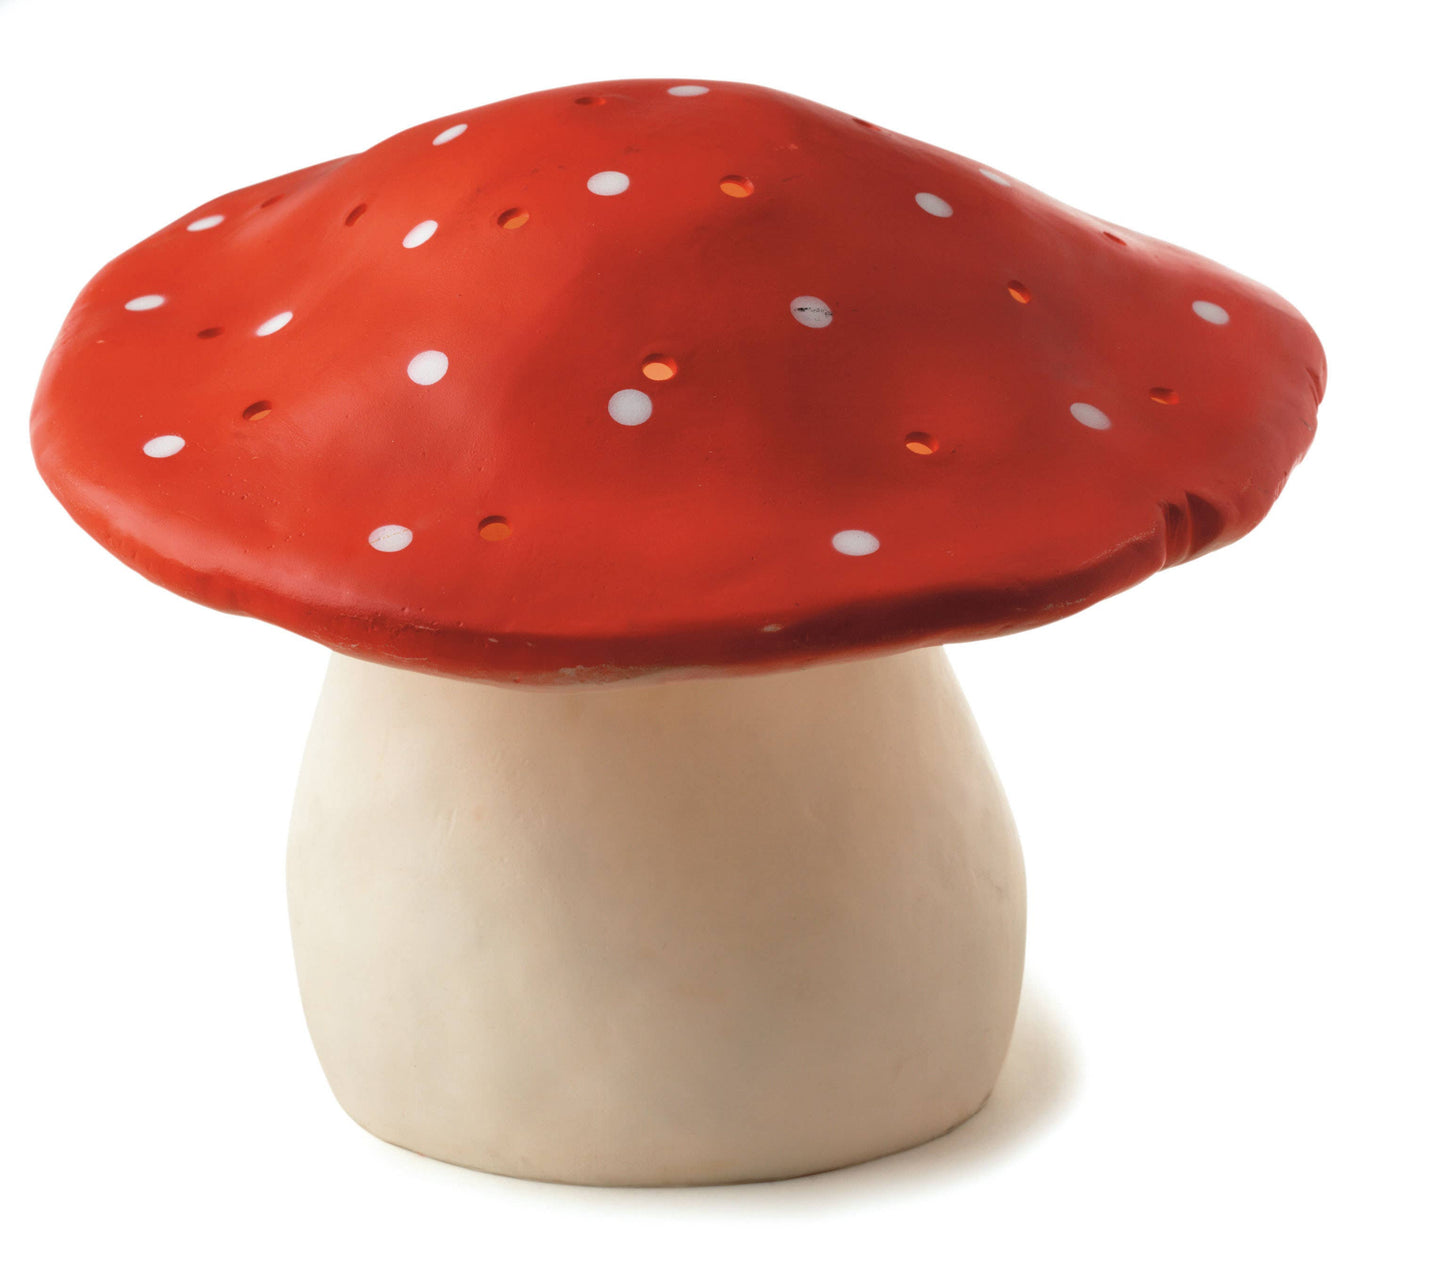 Large Mushroom Red w/ Plug